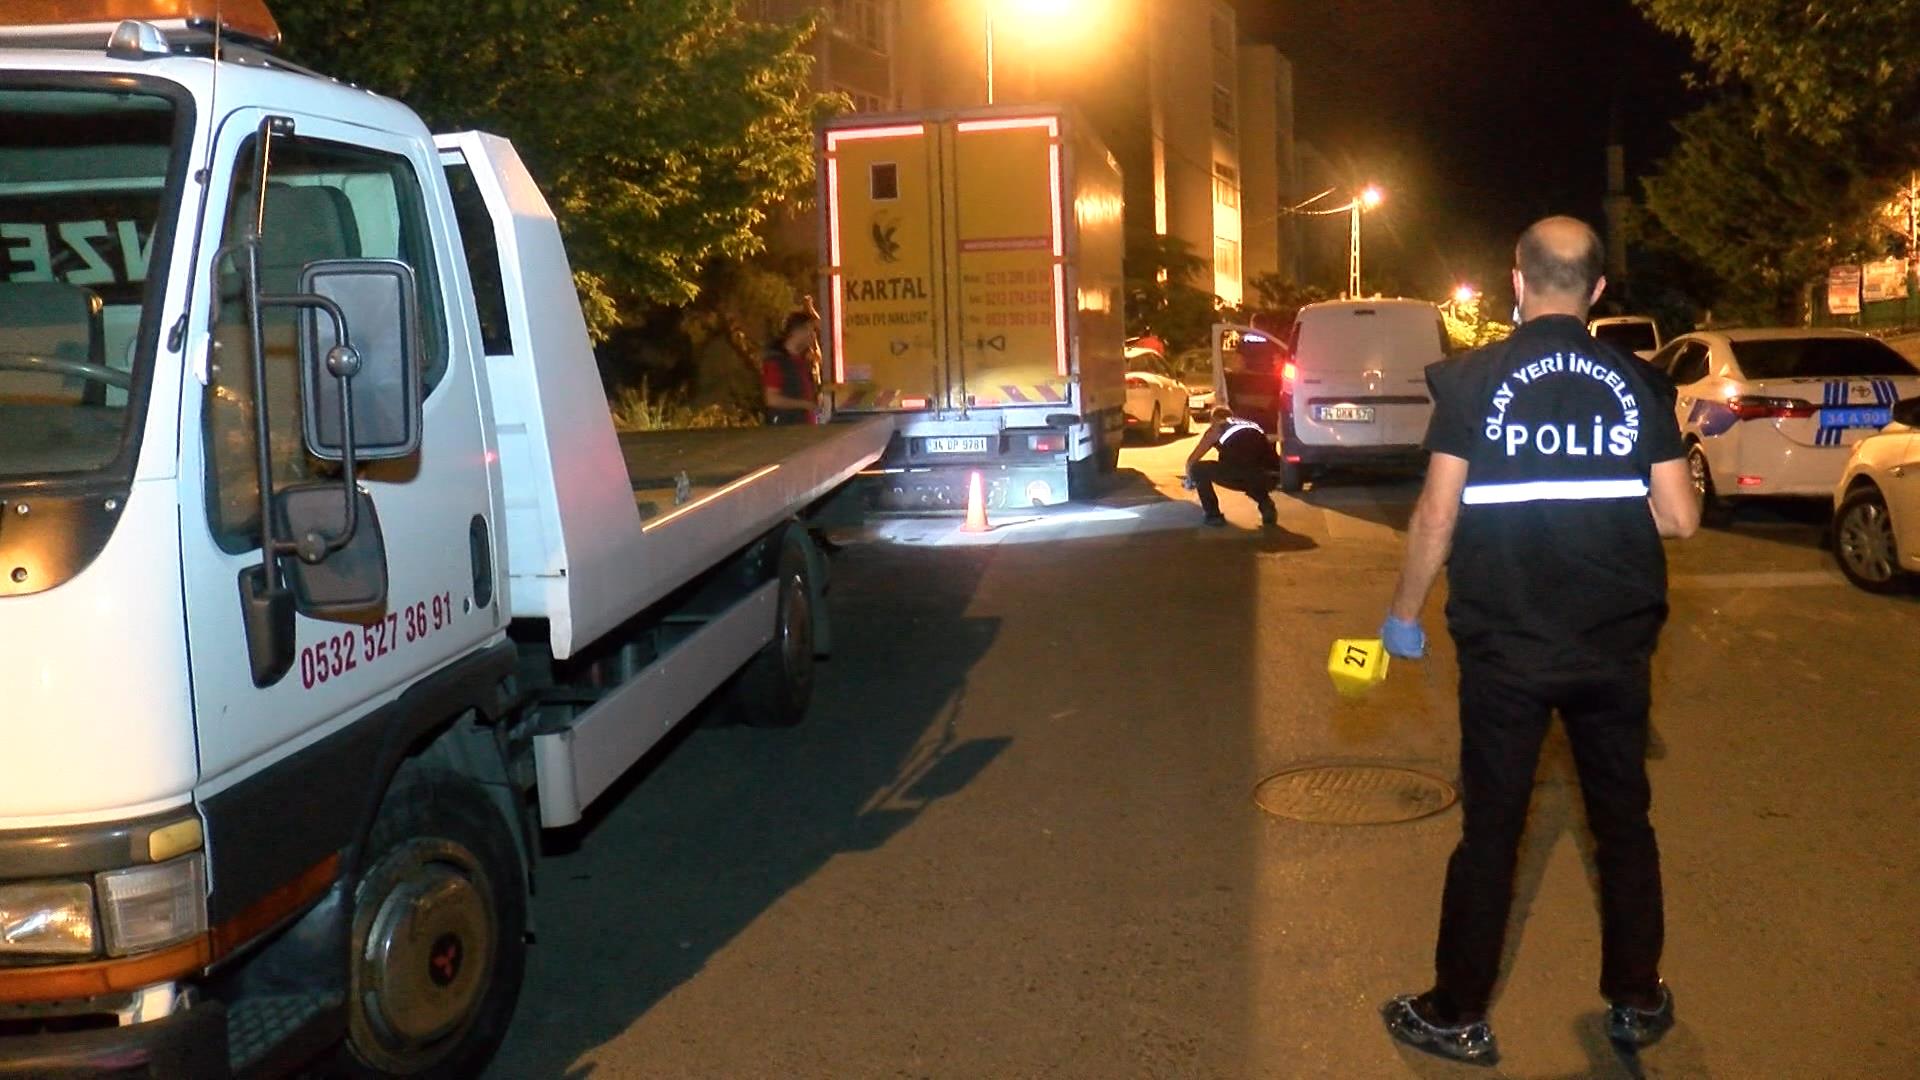 Maltepe'de kalaşnikoflu çatışma: 1'i ağır, 2 yaralı